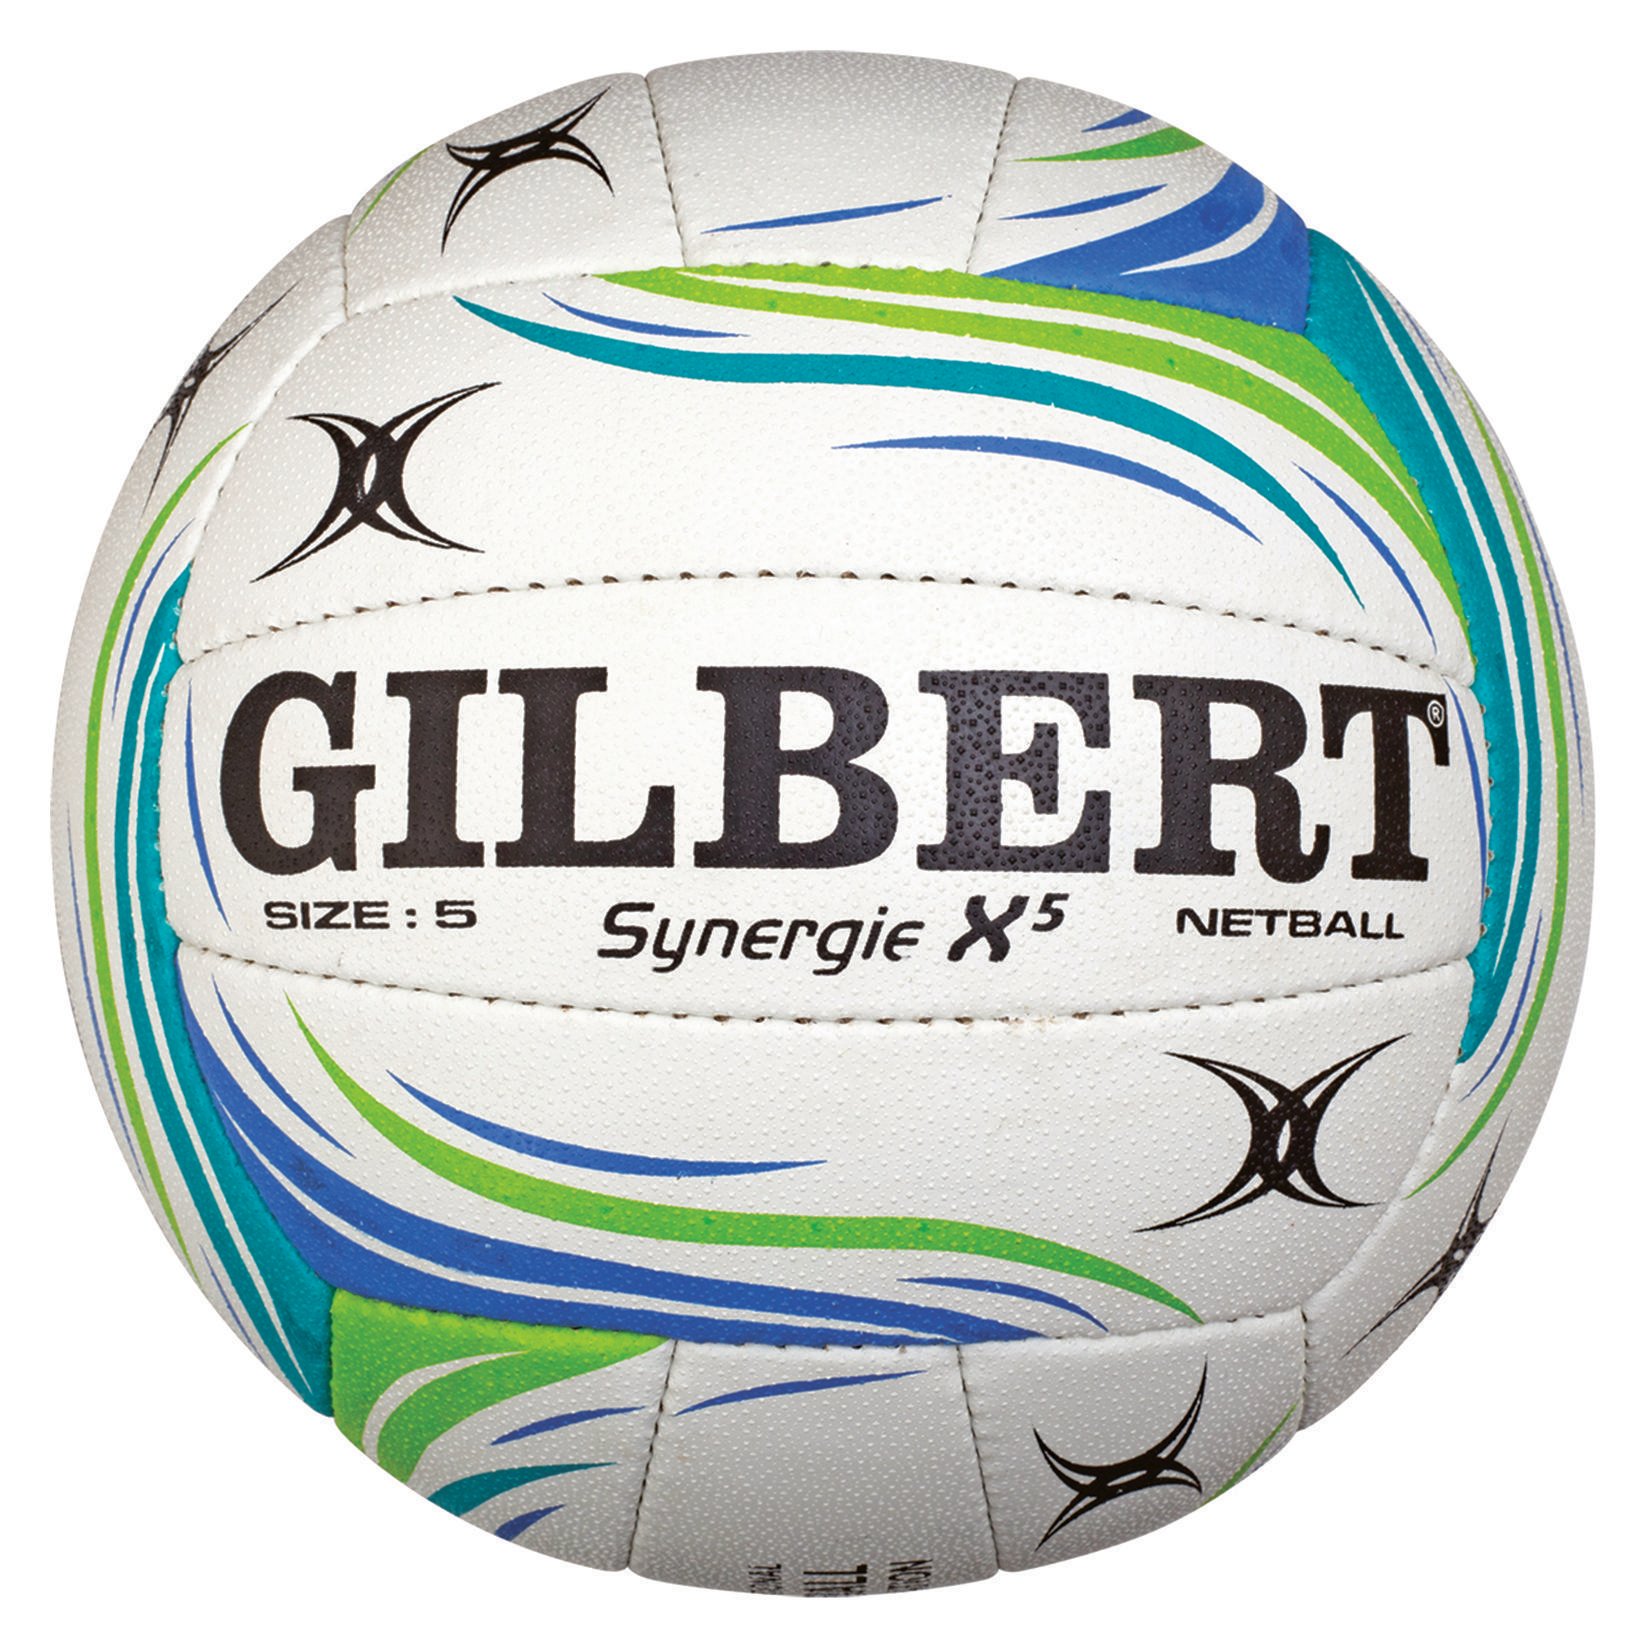 Gilbert Spectra Xt Netball Match Ball